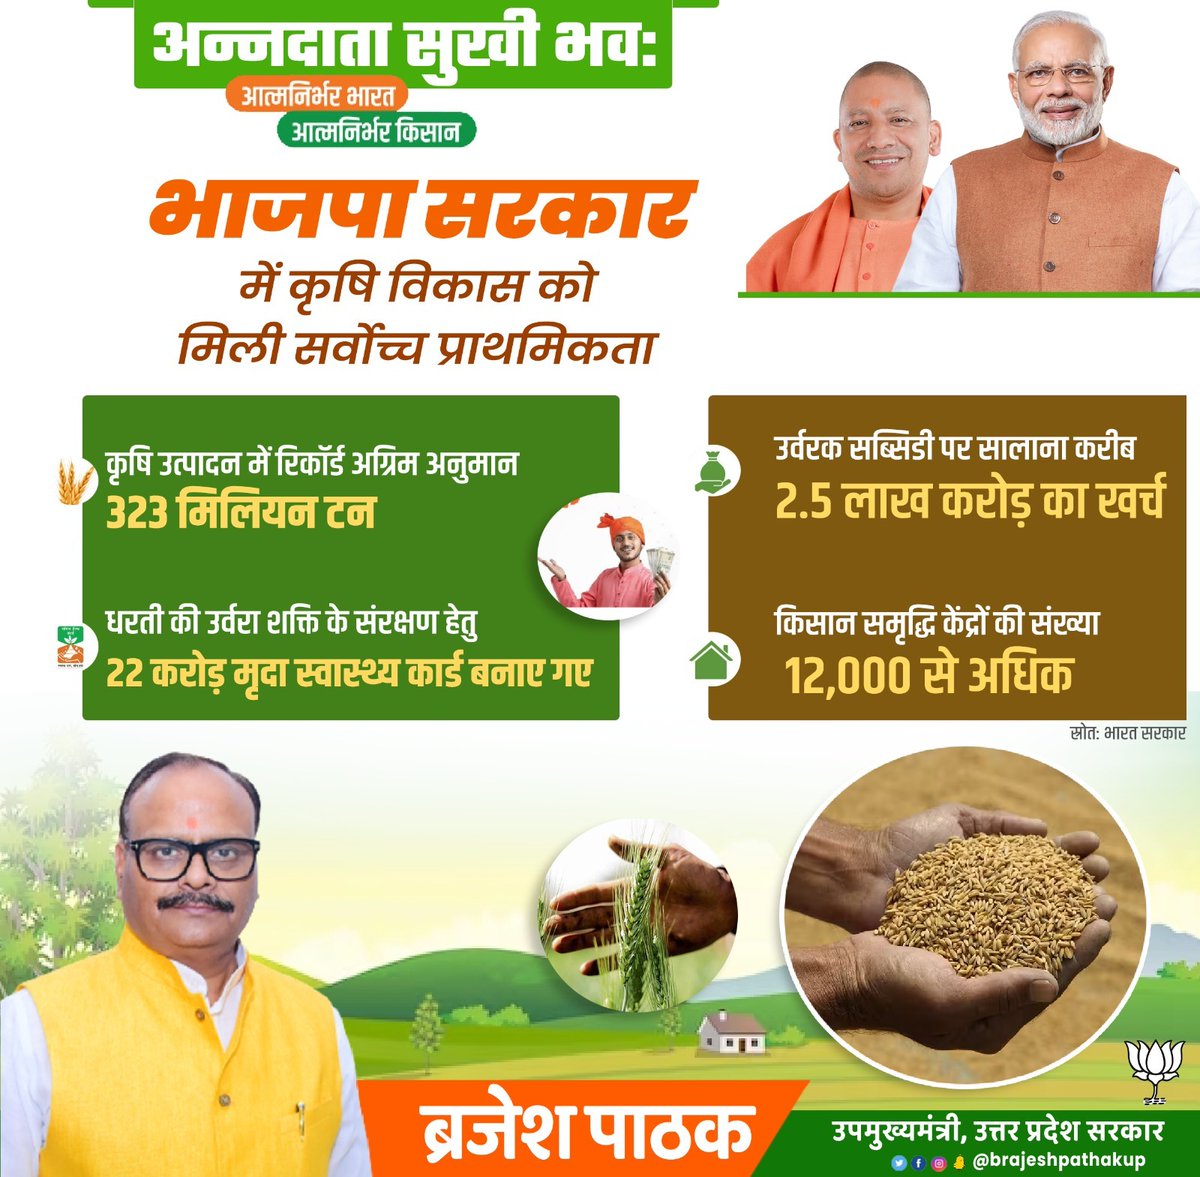 #अन्नदाता_सुखी_भव:
@BJP4India सरकार में कृषि विकास को मिली सर्वोच्च प्राथमिकता।
#GoodGovernance #atmanirbharkisan  
@PMOIndia @BJP4UP